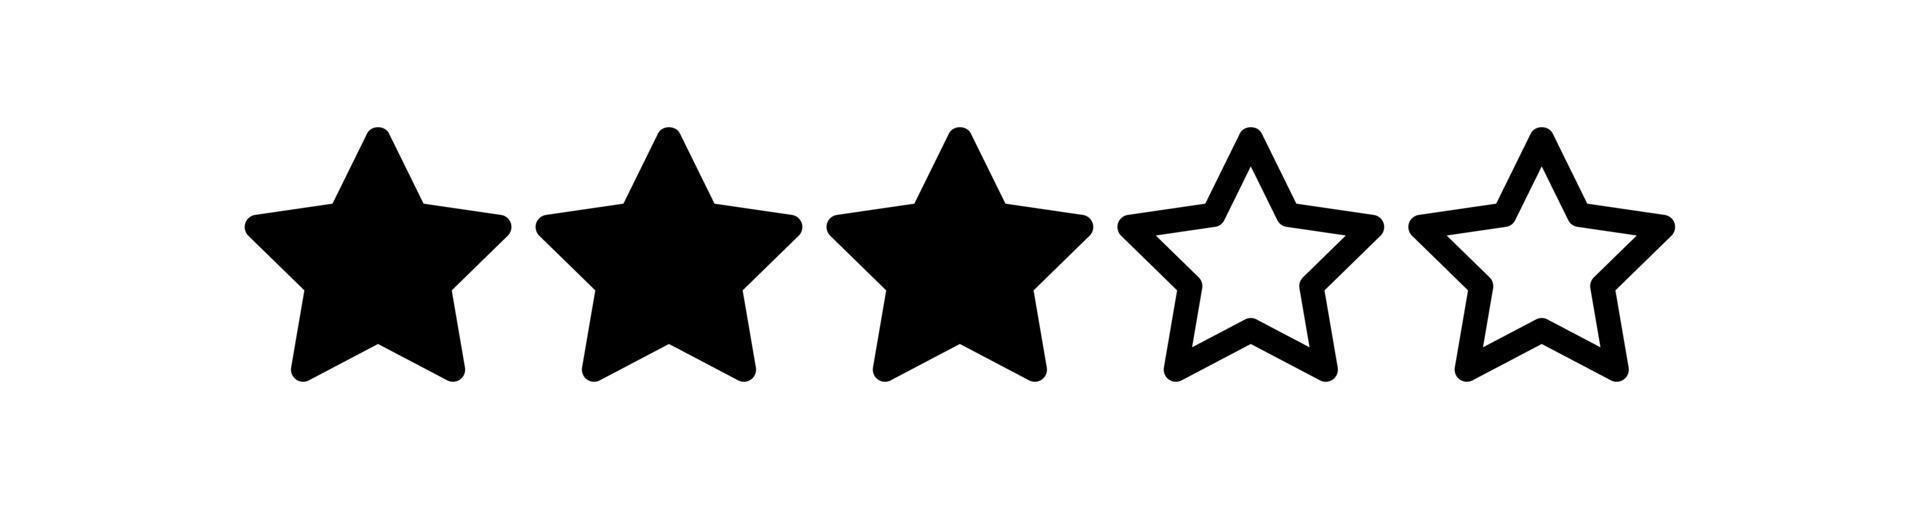 Tres estrellas clasificación vector ilustración para ninguna propósitos.